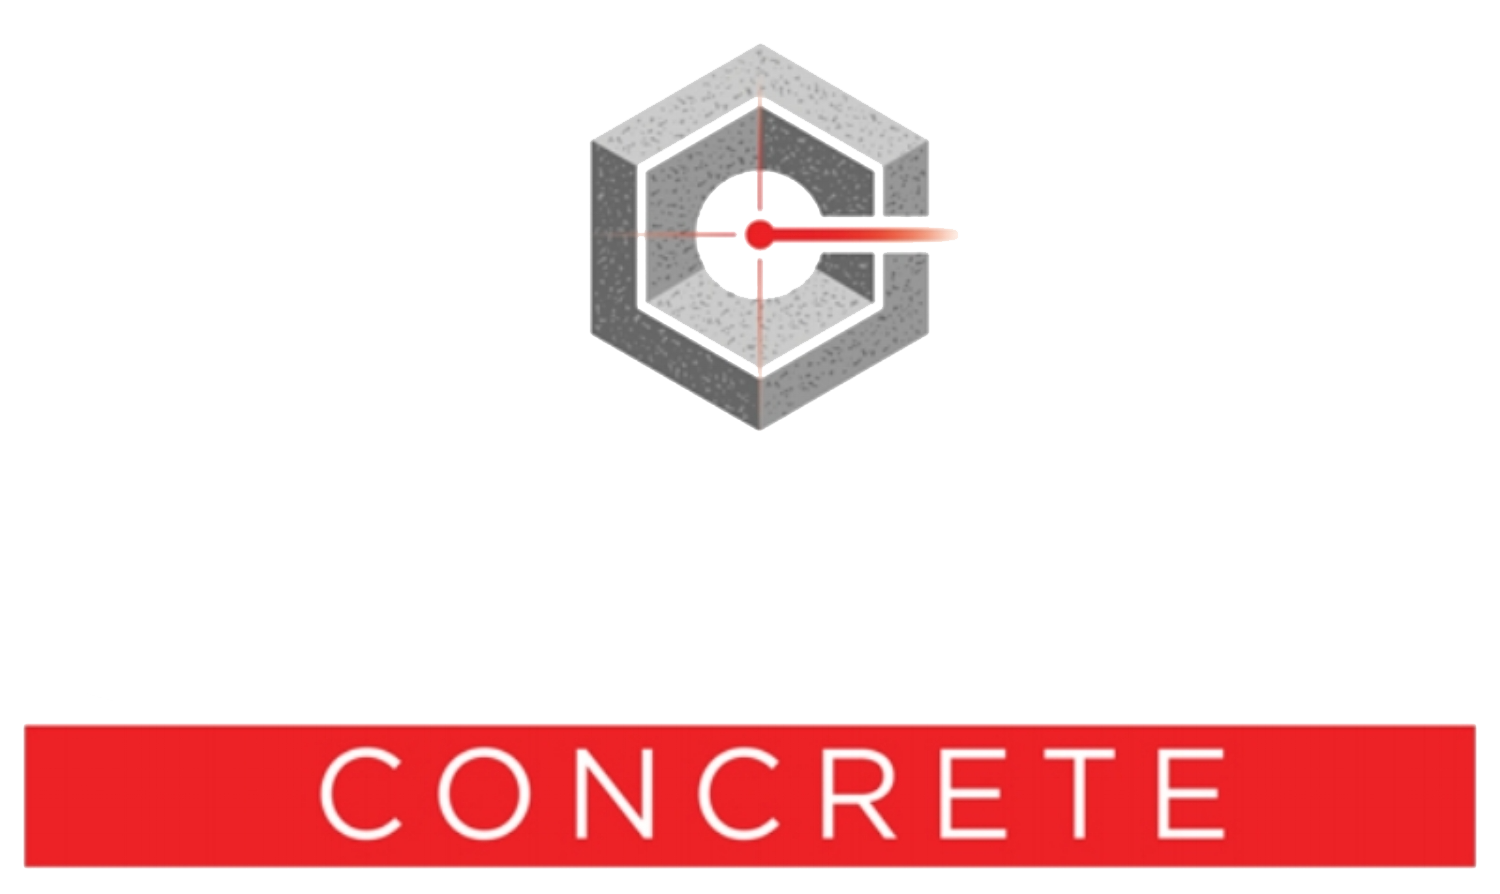 Capital Concrete Concrete Construction